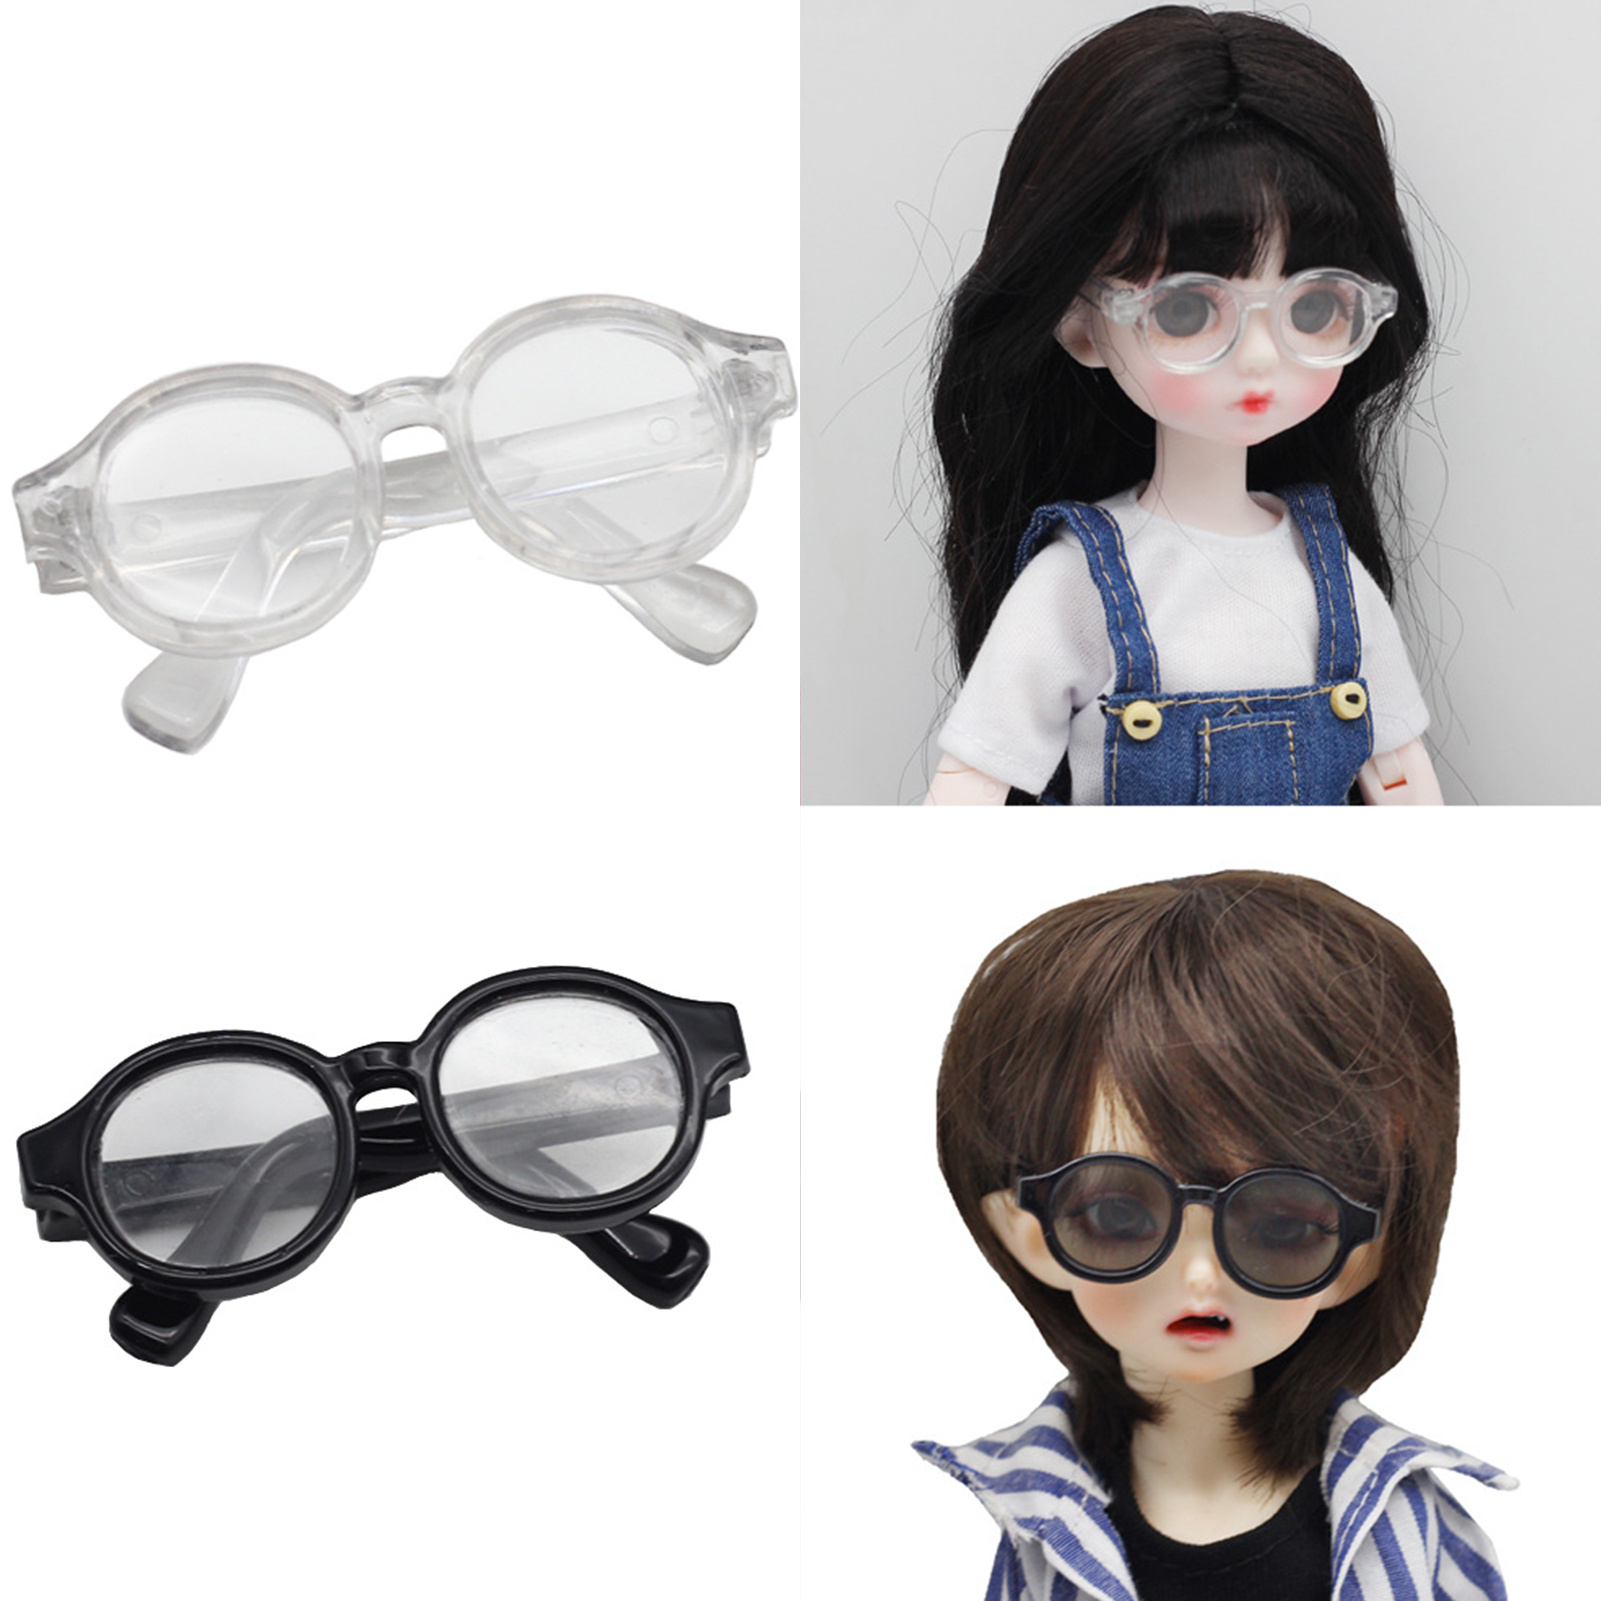 Vivid Girl ตุ๊กตาแว่นตาตกแต่งสวยรอบรูปตุ๊กตาเด็กหญิงน่ารักแว่นตาสำหรับเด็ก